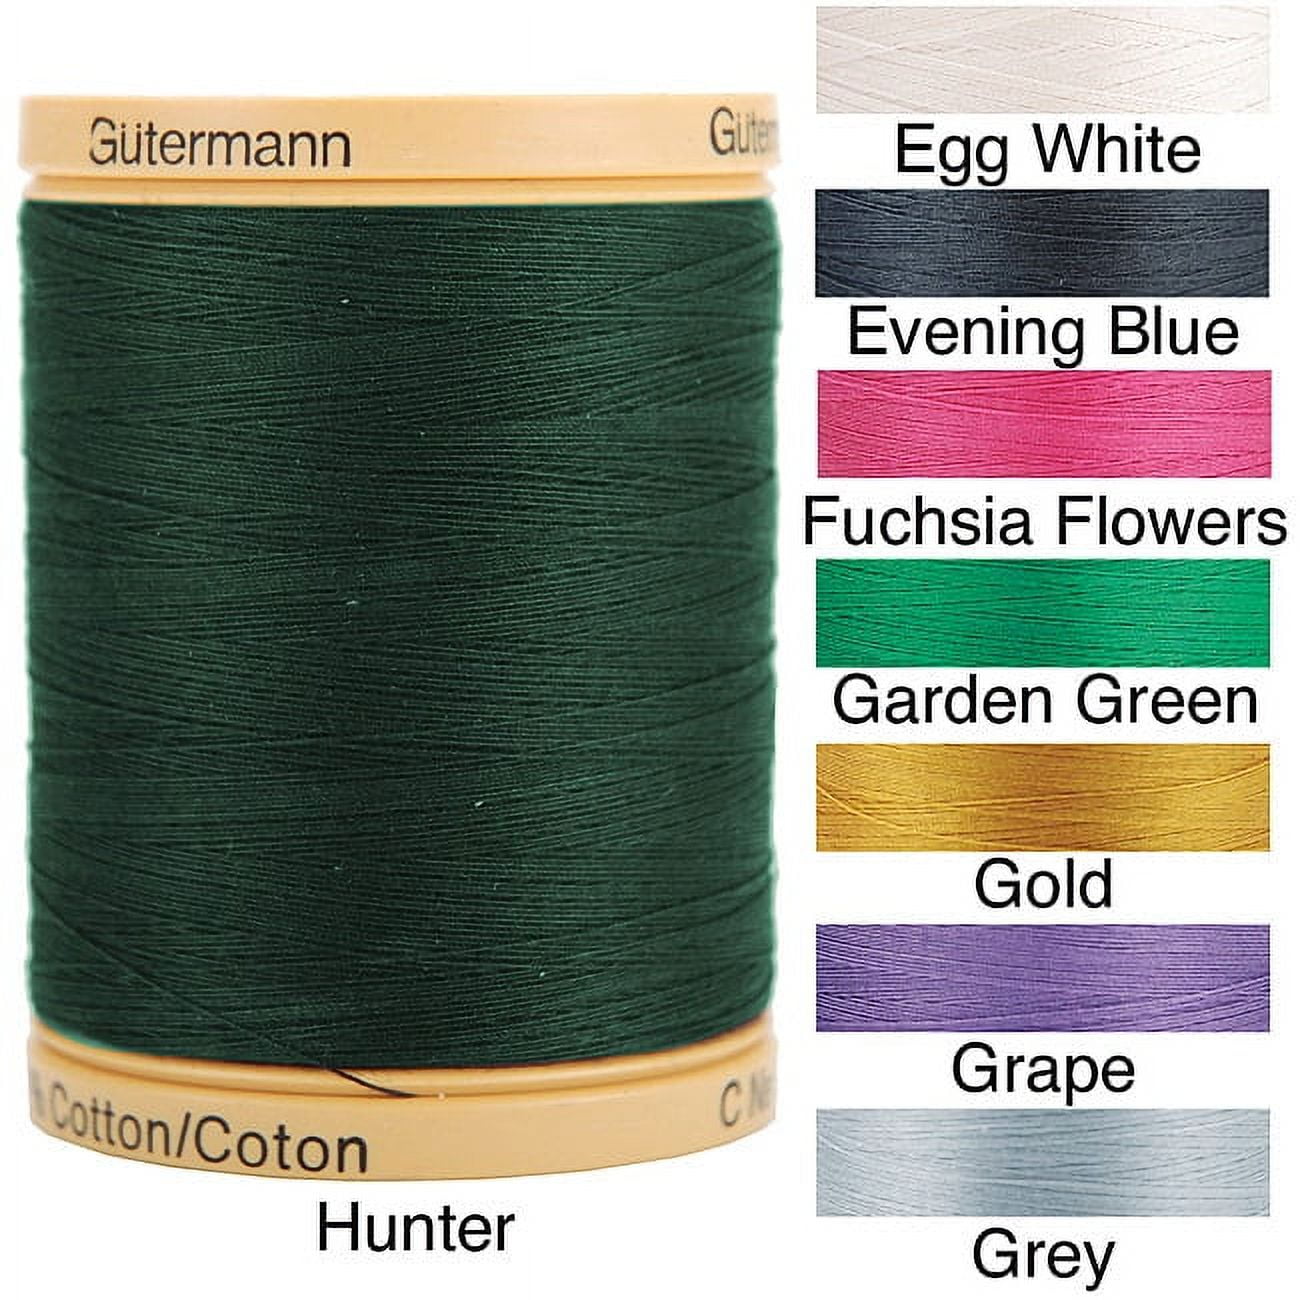 Gutermann 25049 Natural Cotton Thread Solids 876 Yards-White